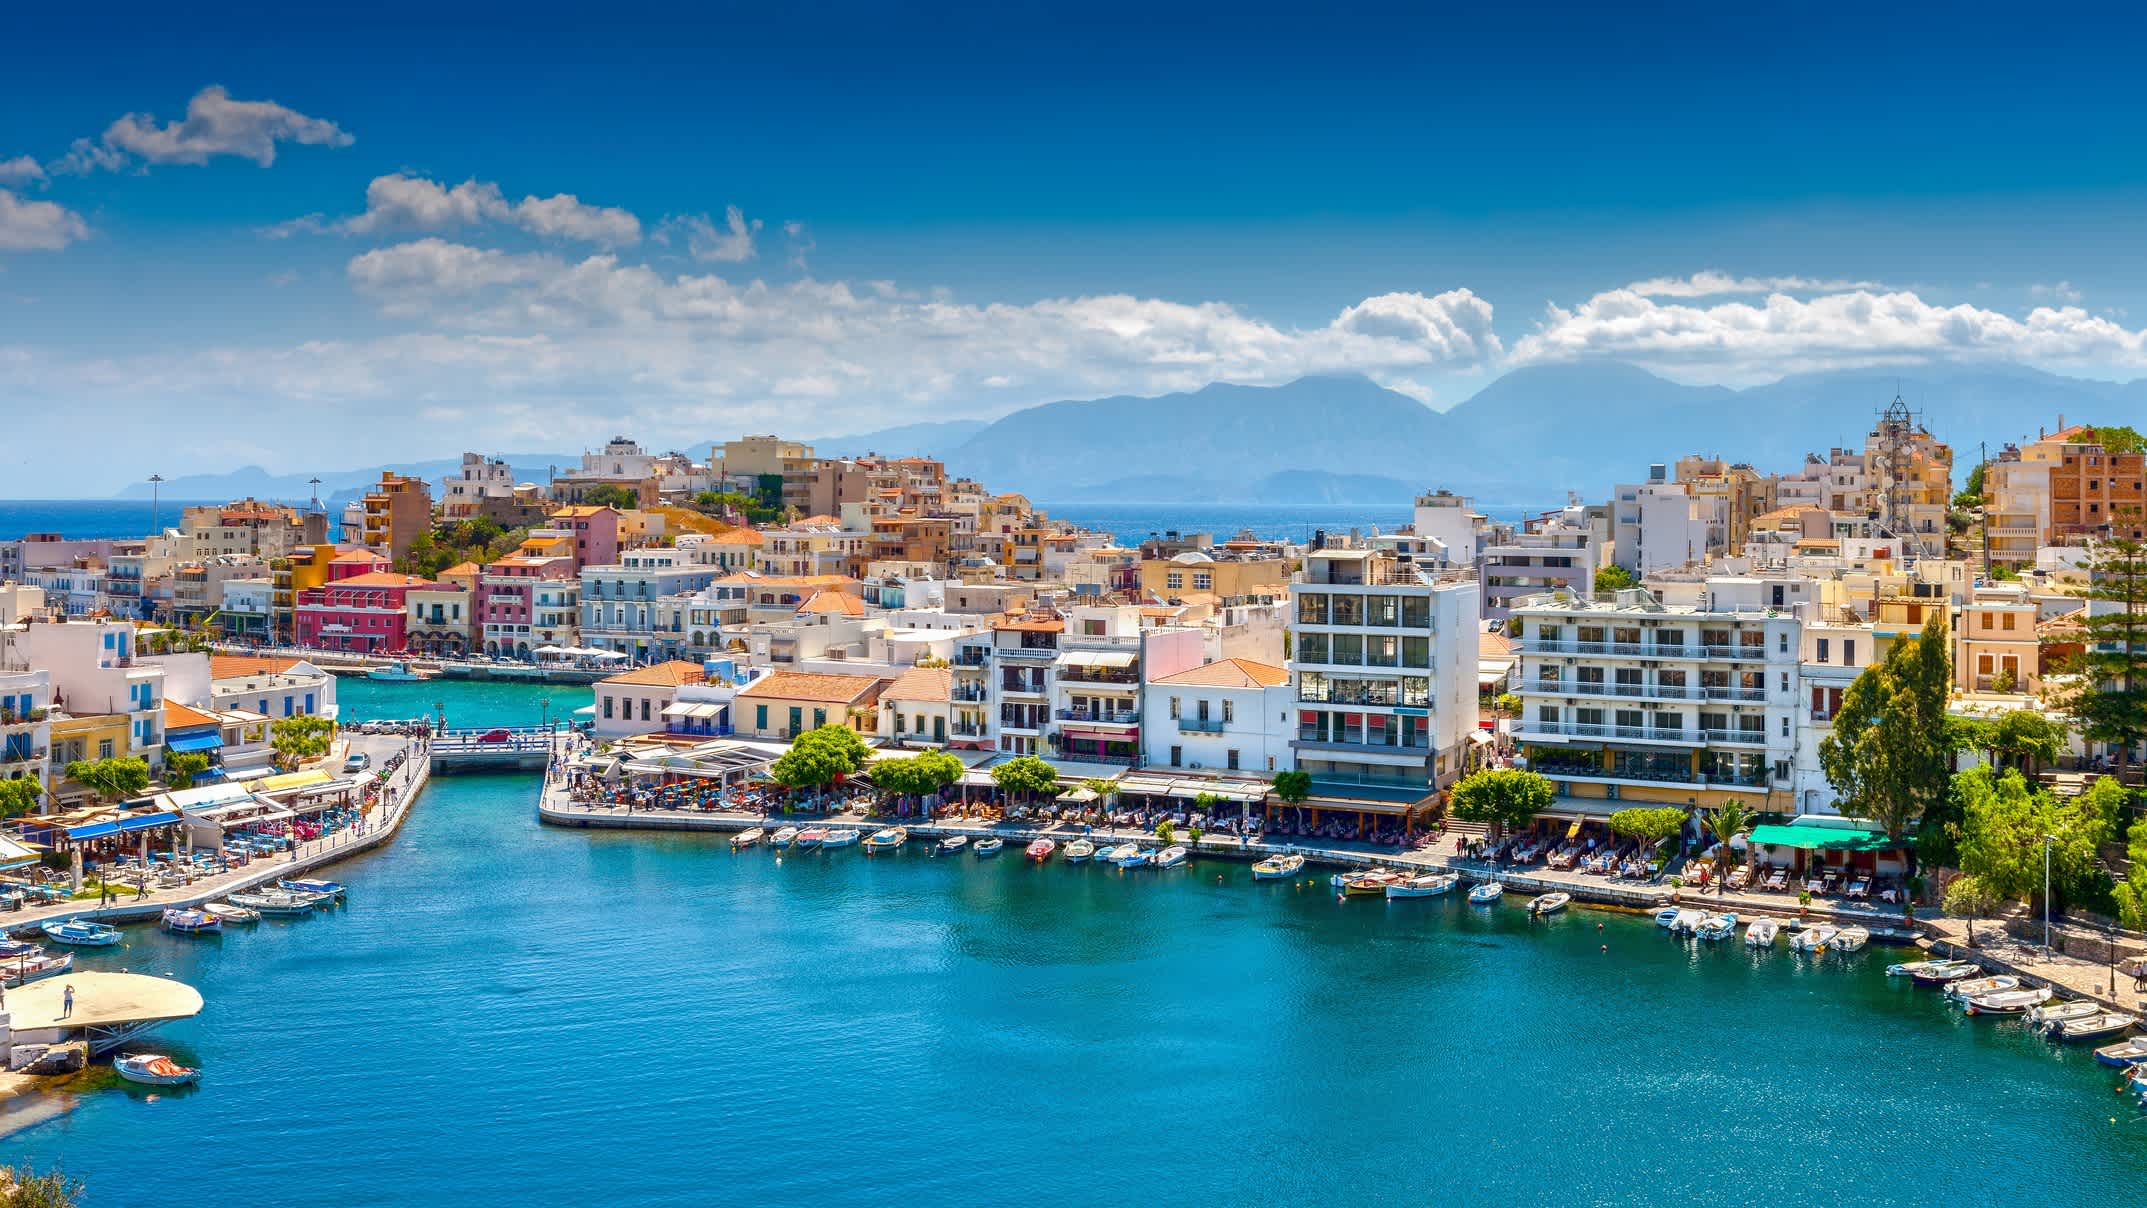 Blick auf den Agios Nikolaos Stadt auf Kreta, Griechenland

